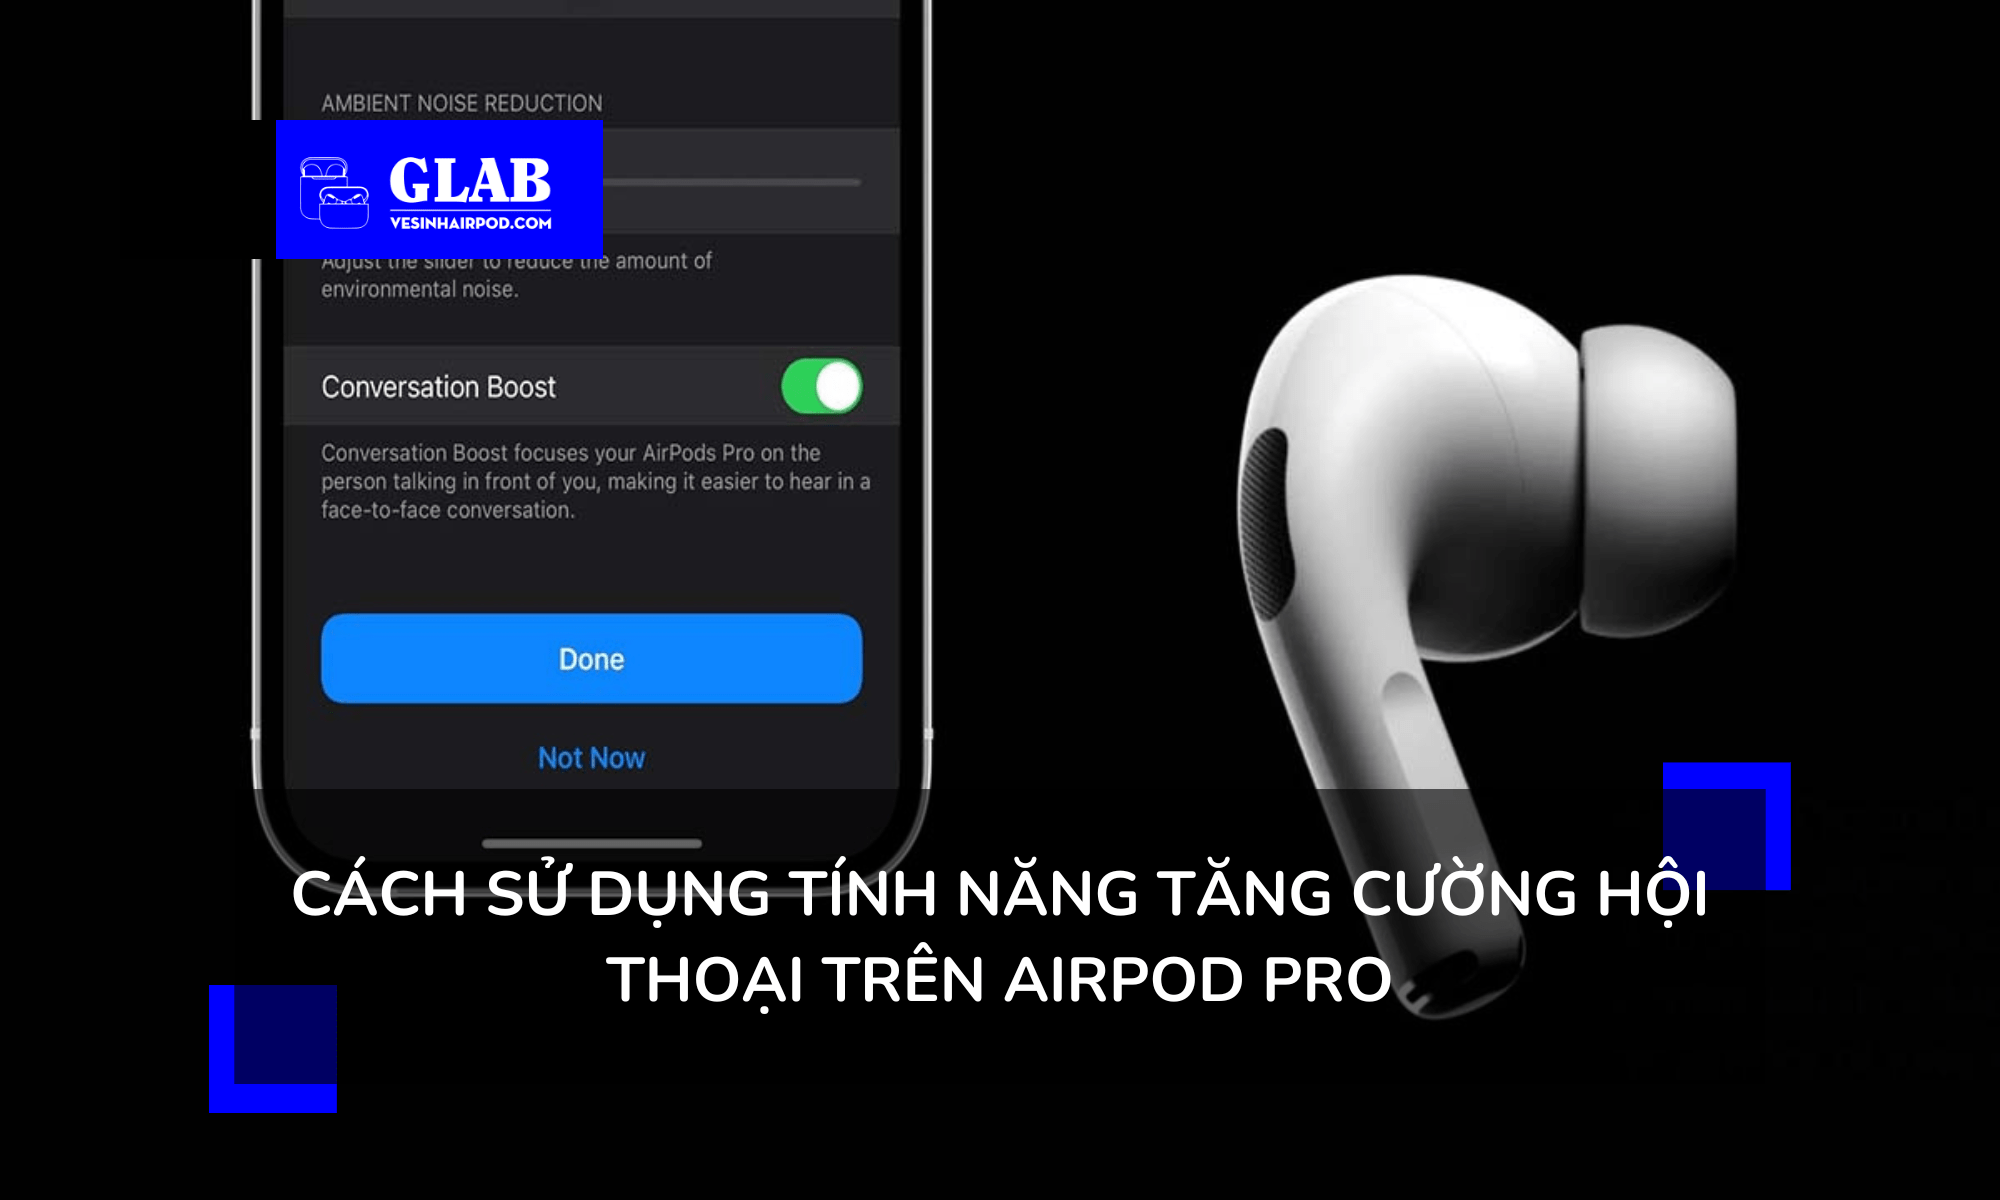 tang-cuong-hoi-thoai-tren-airpods-pro